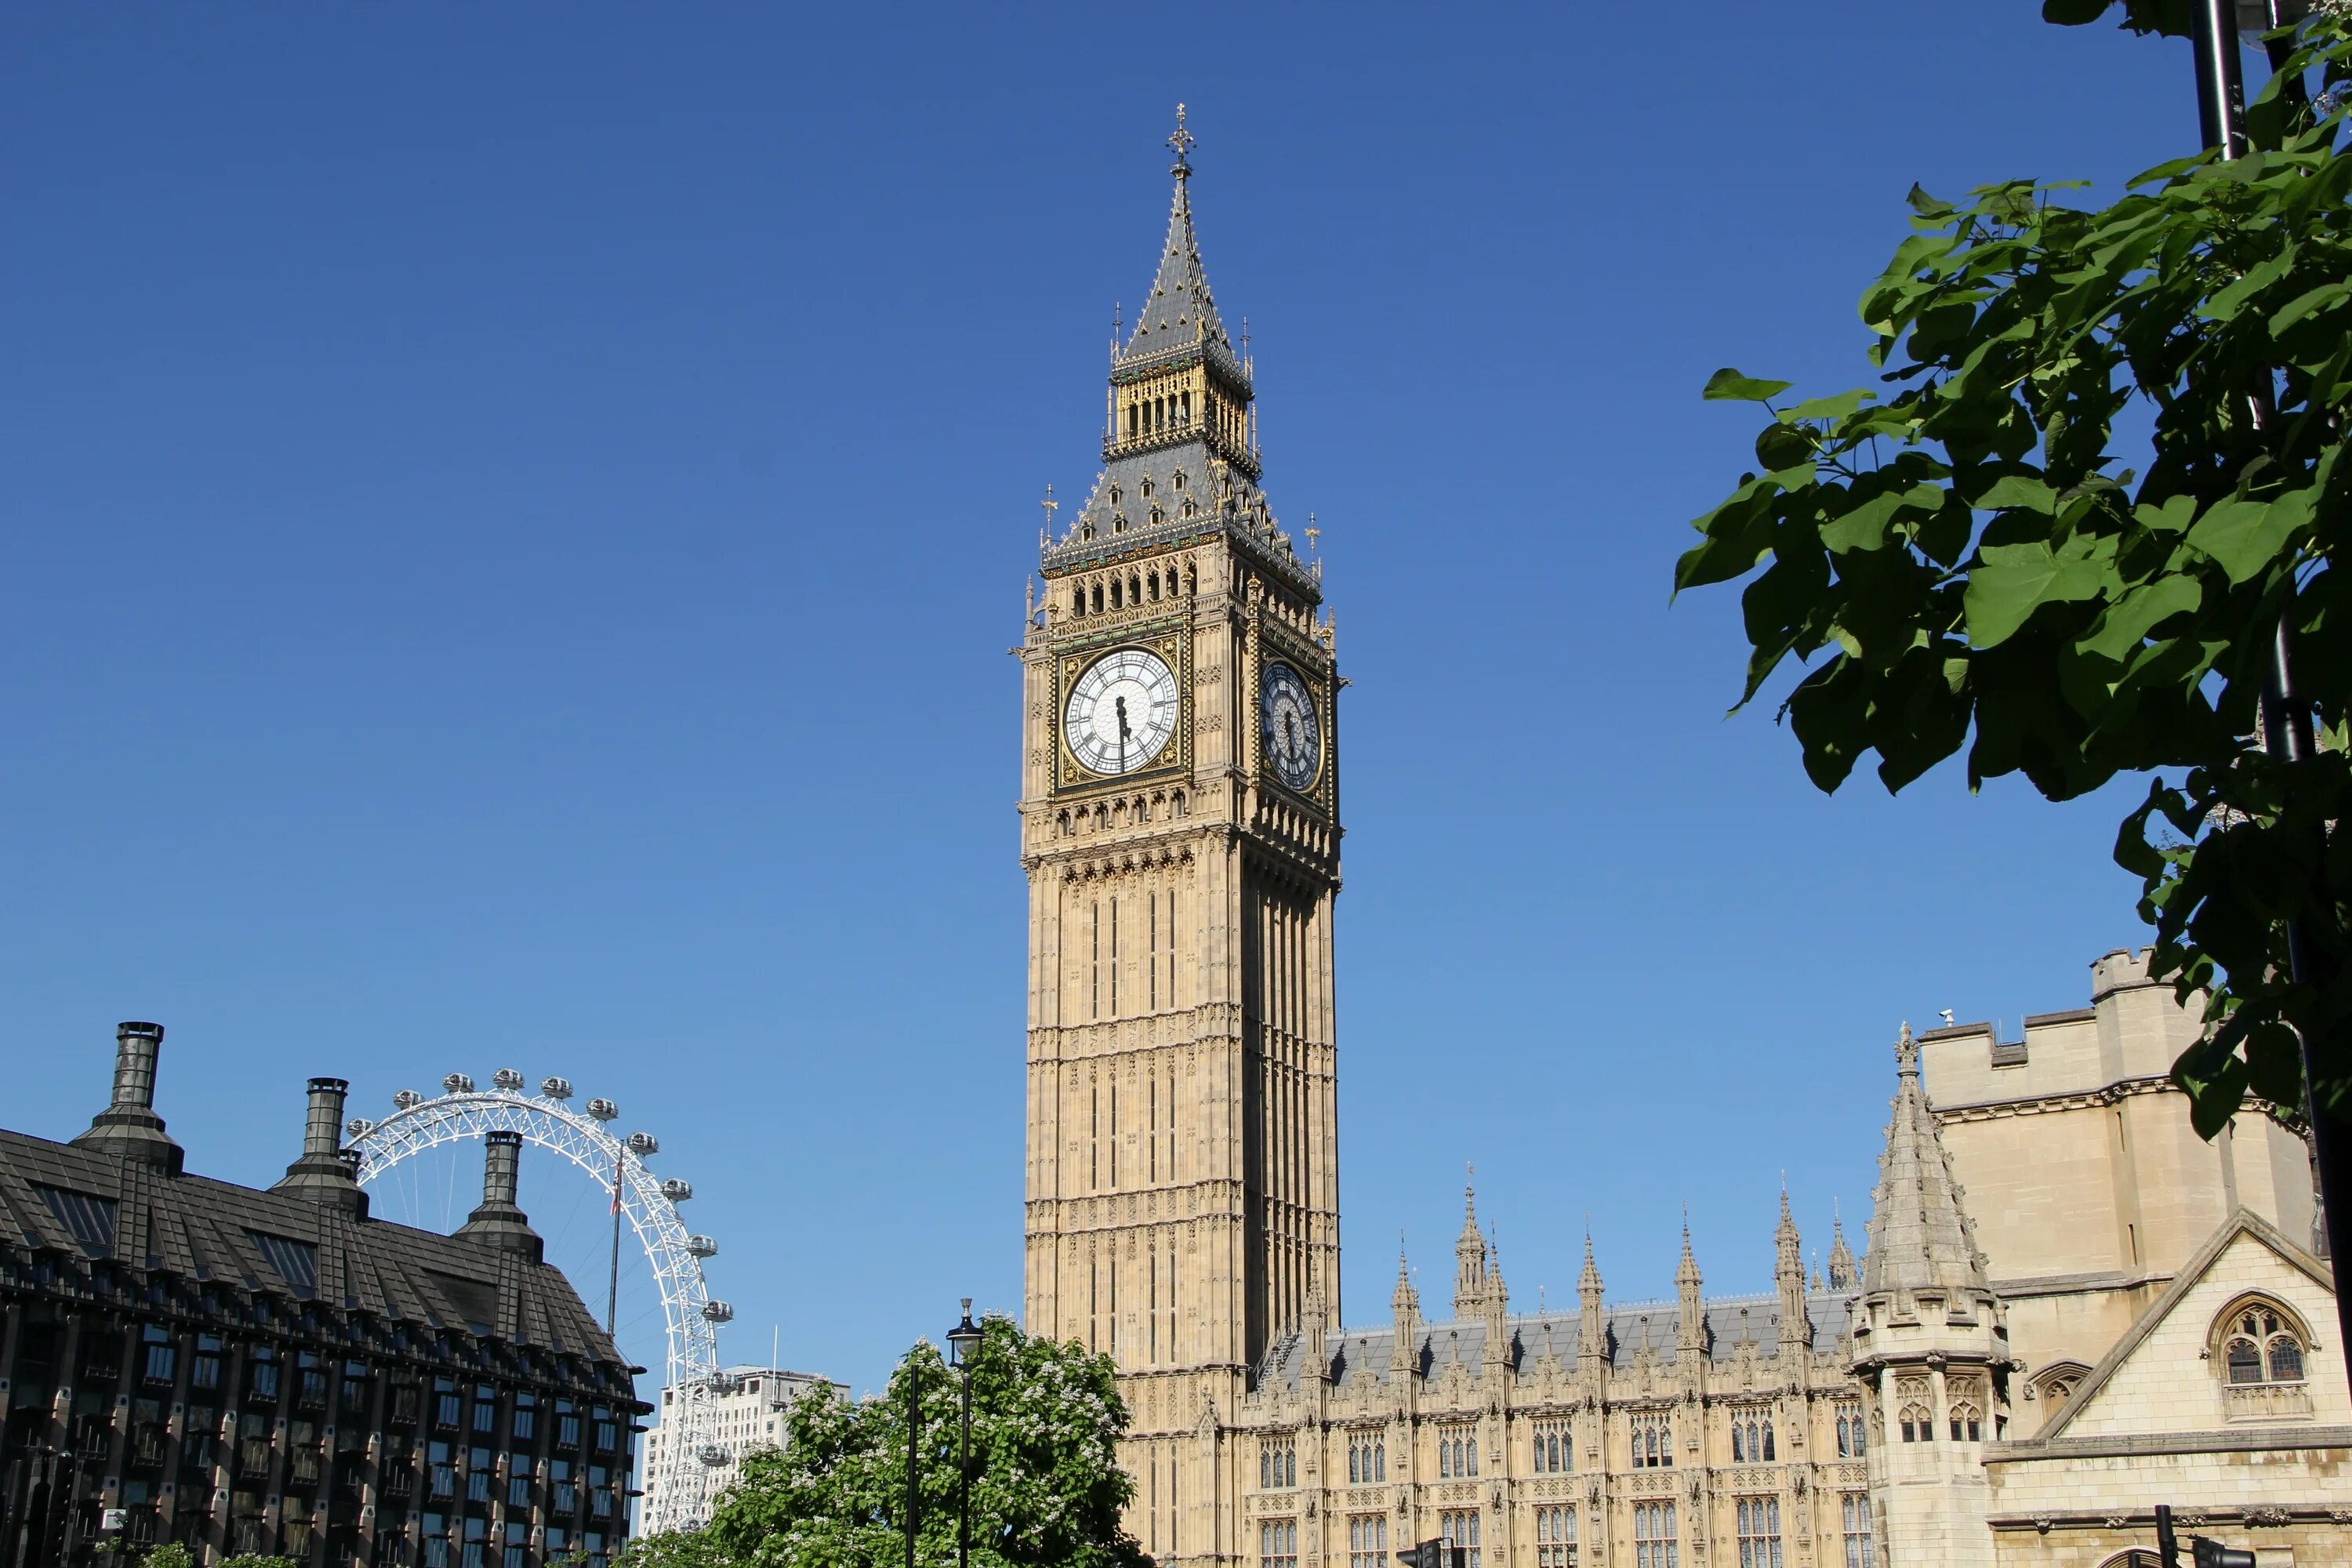 Башня Биг Бен в Лондоне. Часовая башня Вестминстерского дворца. Часовая башня Биг Бен. Биг-Бен (башня Елизаветы). Англия ис